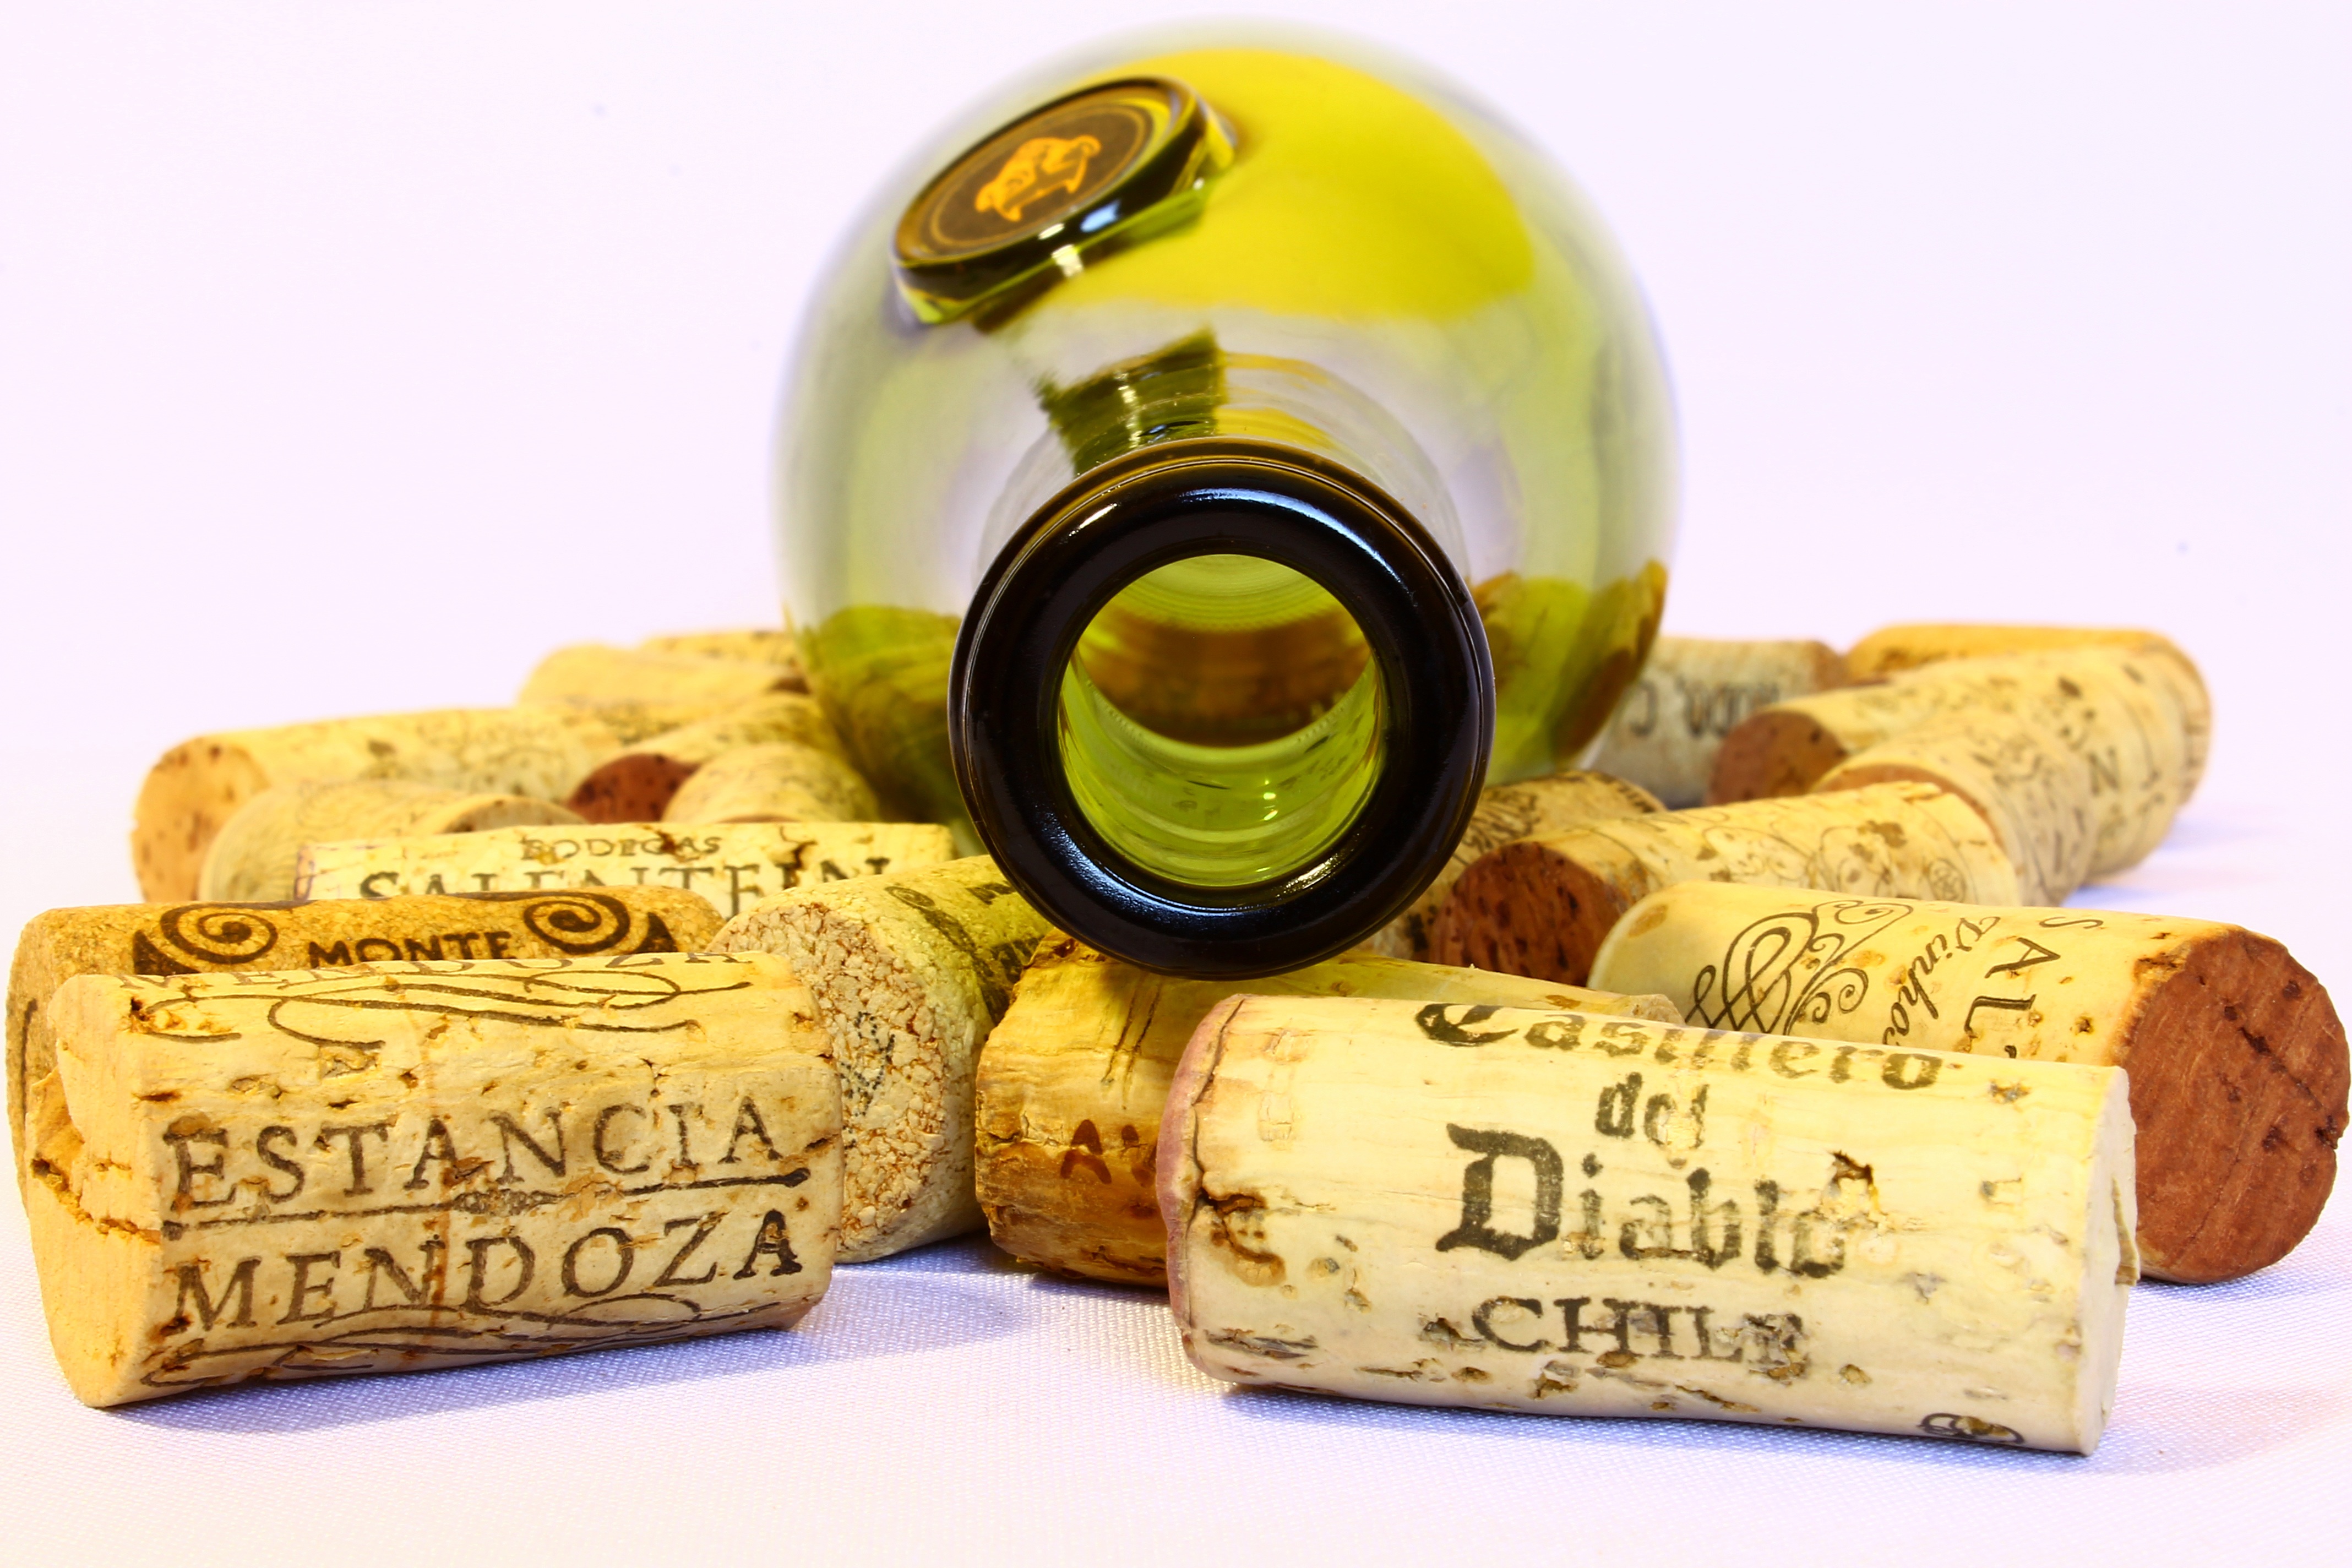 Wallpapers wine bottle cork on the desktop